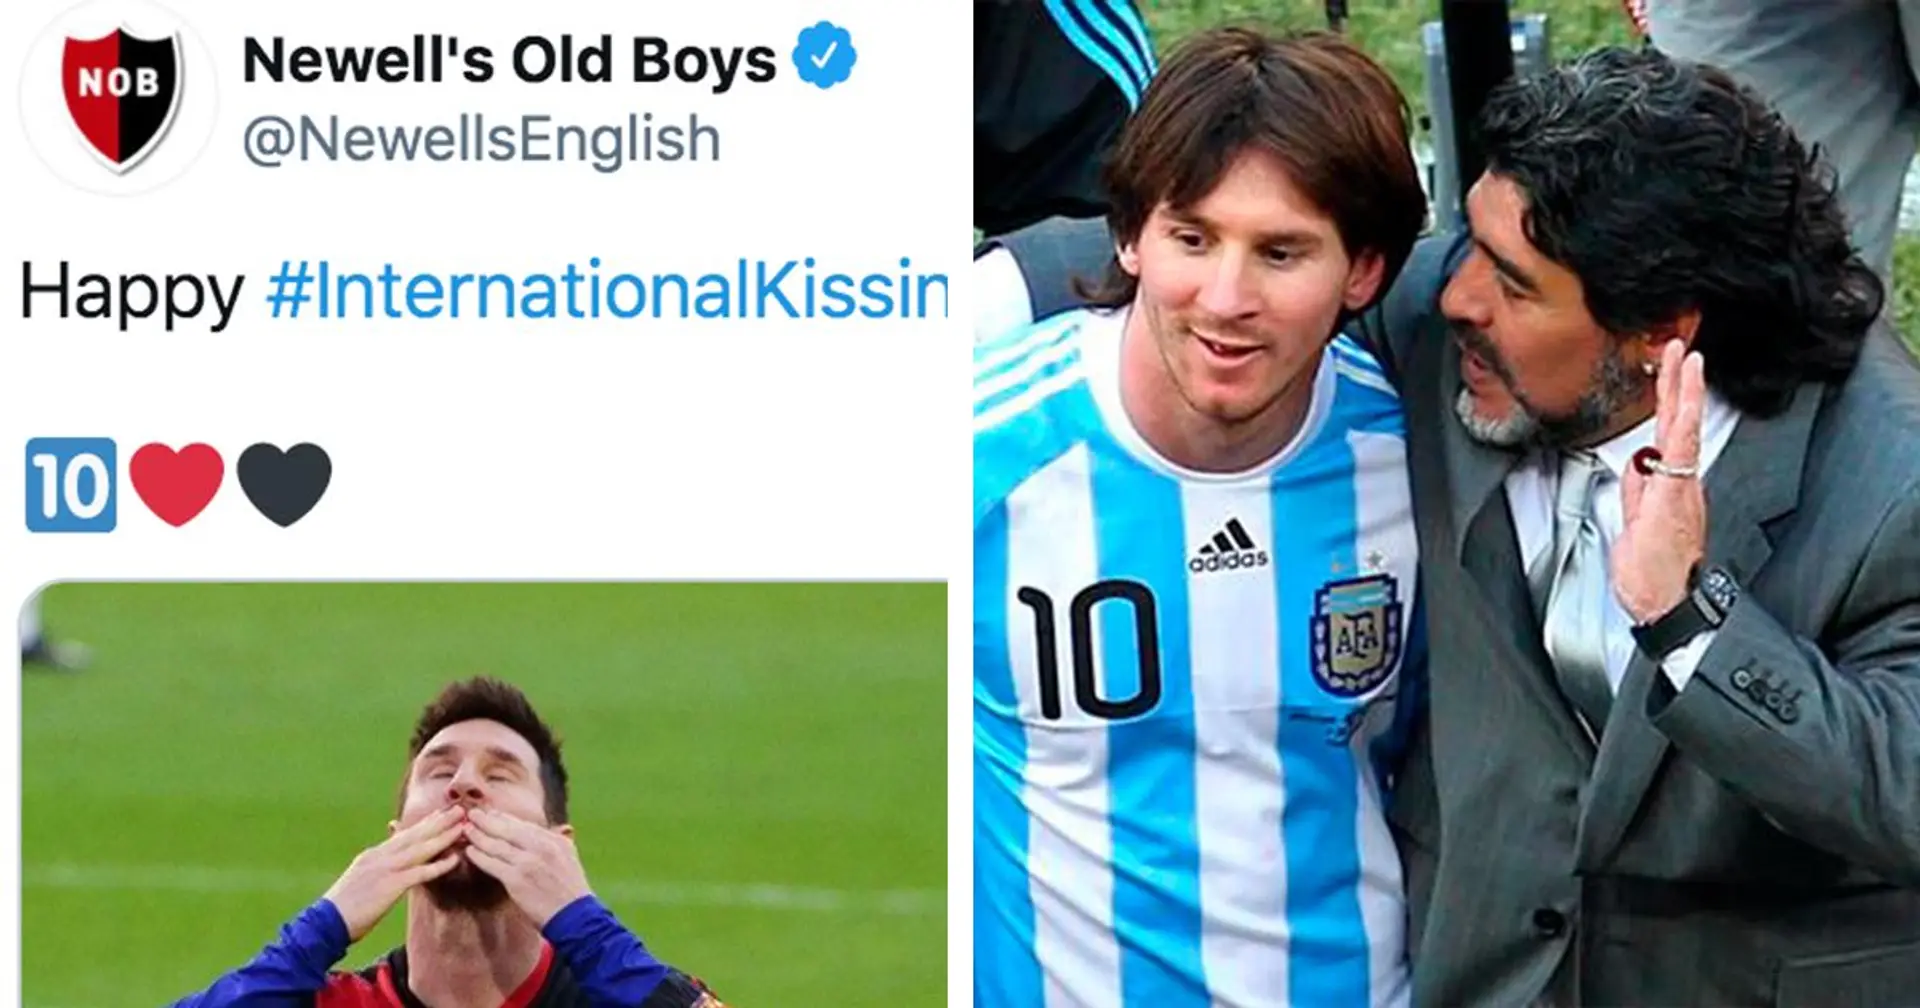 Le club d'enfance de Messi fait un hommage très spéciale pour la Journée internationale des baisers - les Cules adorera ça